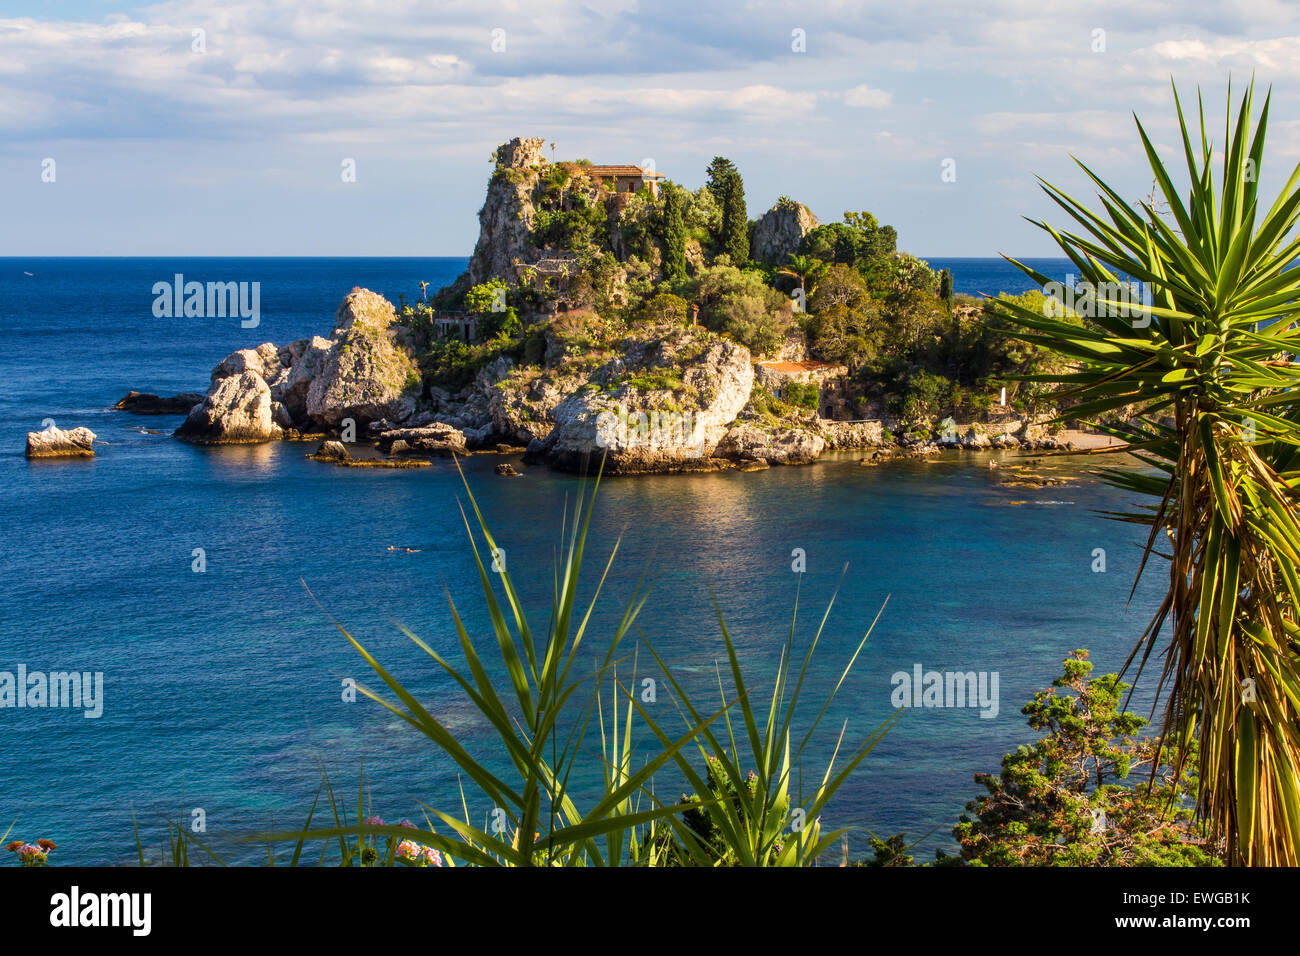 La baia di Taormina. Isola Bella. Regione Sicilia. L'Italia. Foto Stock